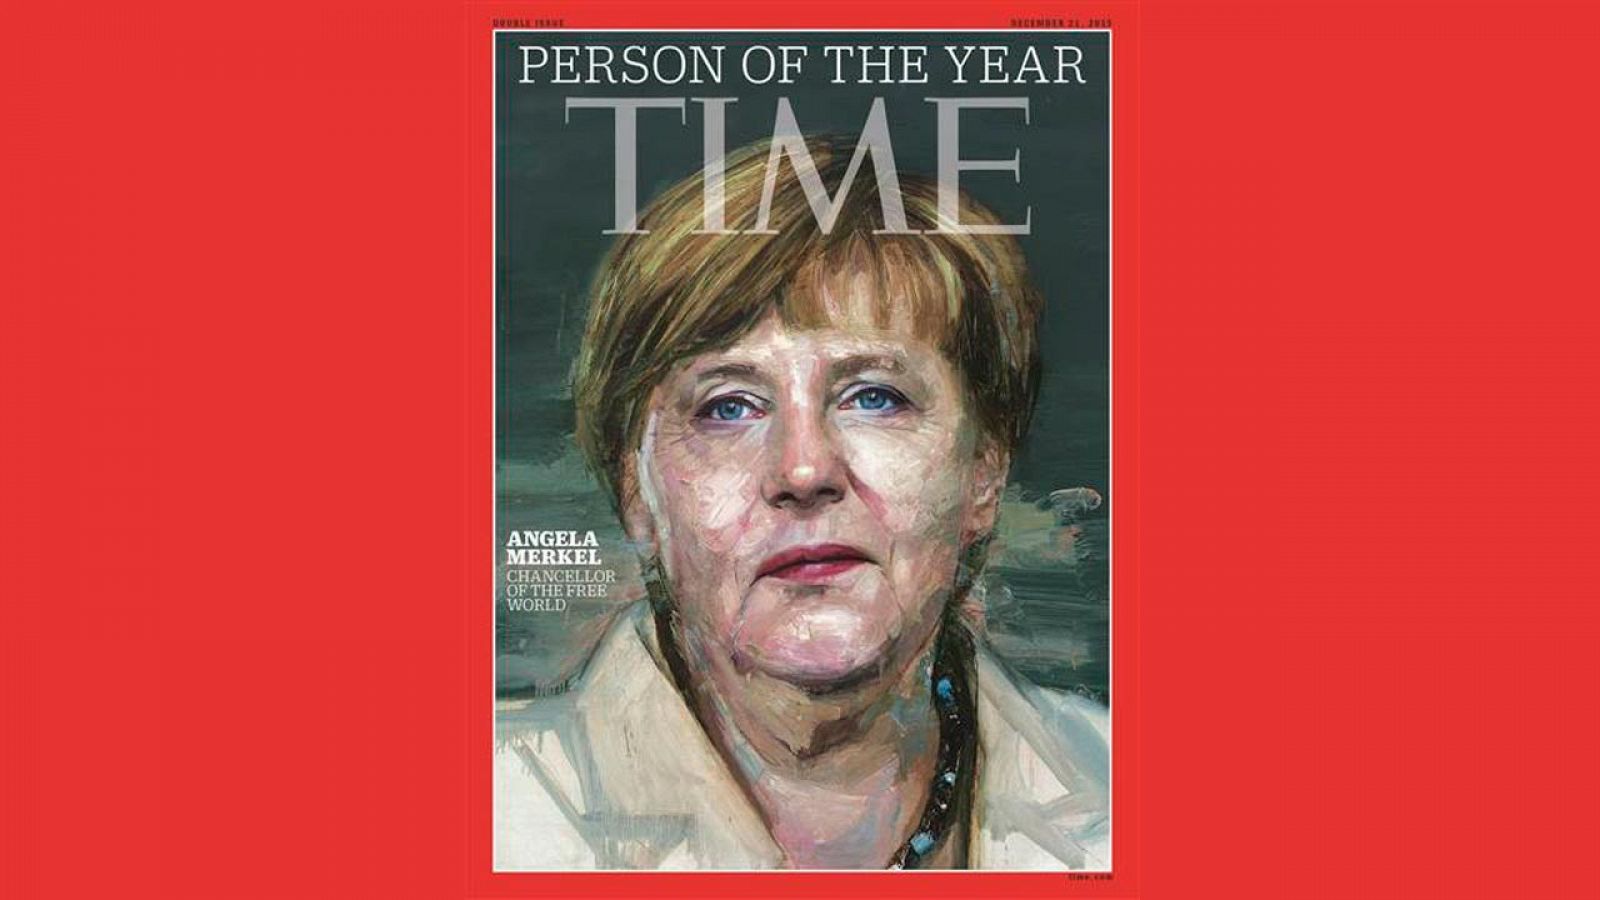 Angela Merkel es la persona del Año 2015 para la revista 'Time'.